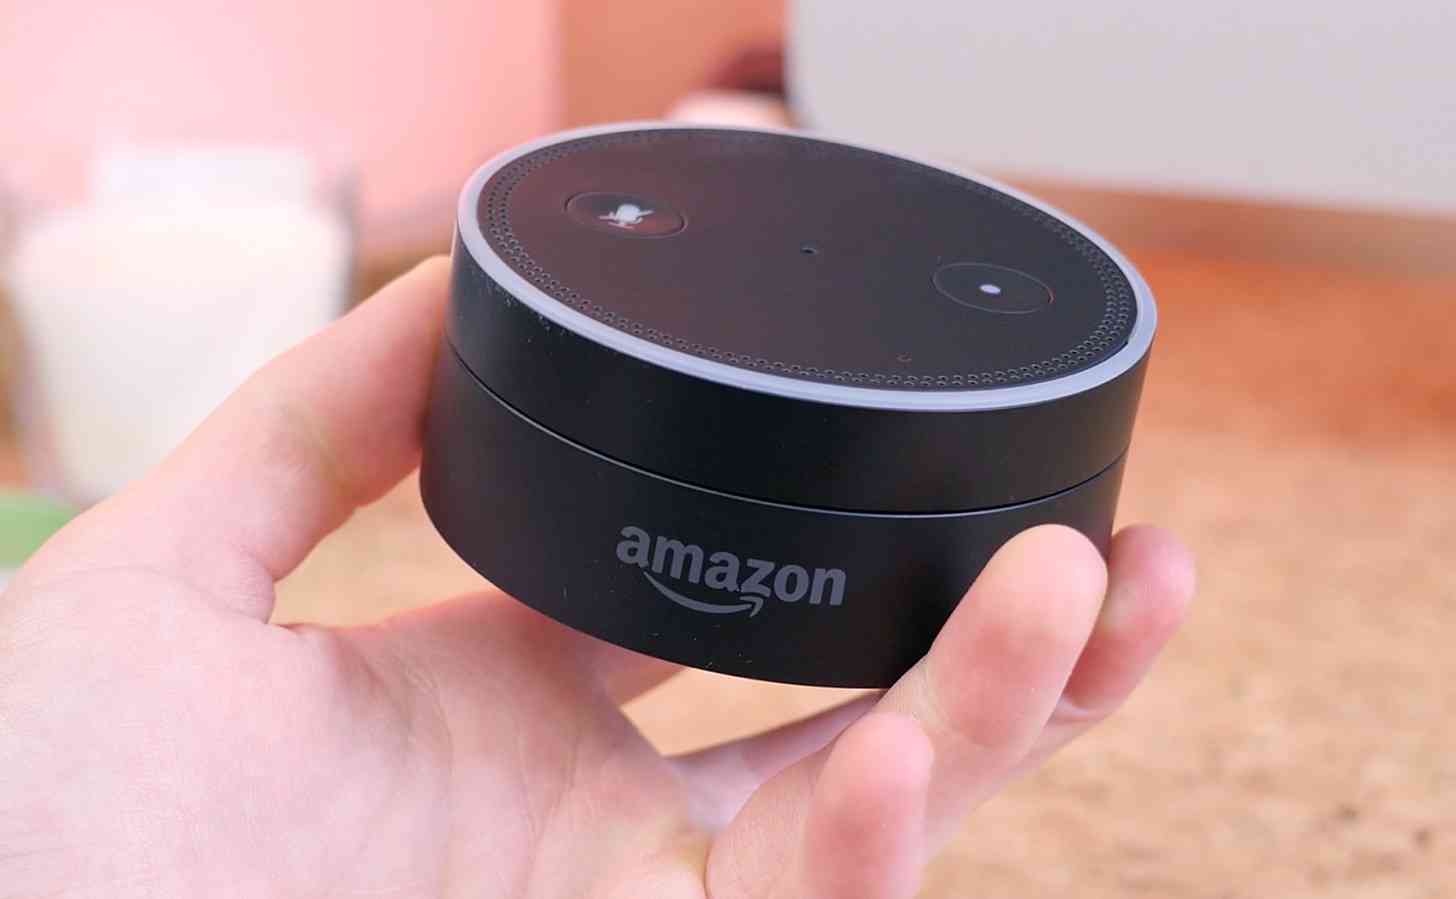 Amazon Echo Dot hands-on